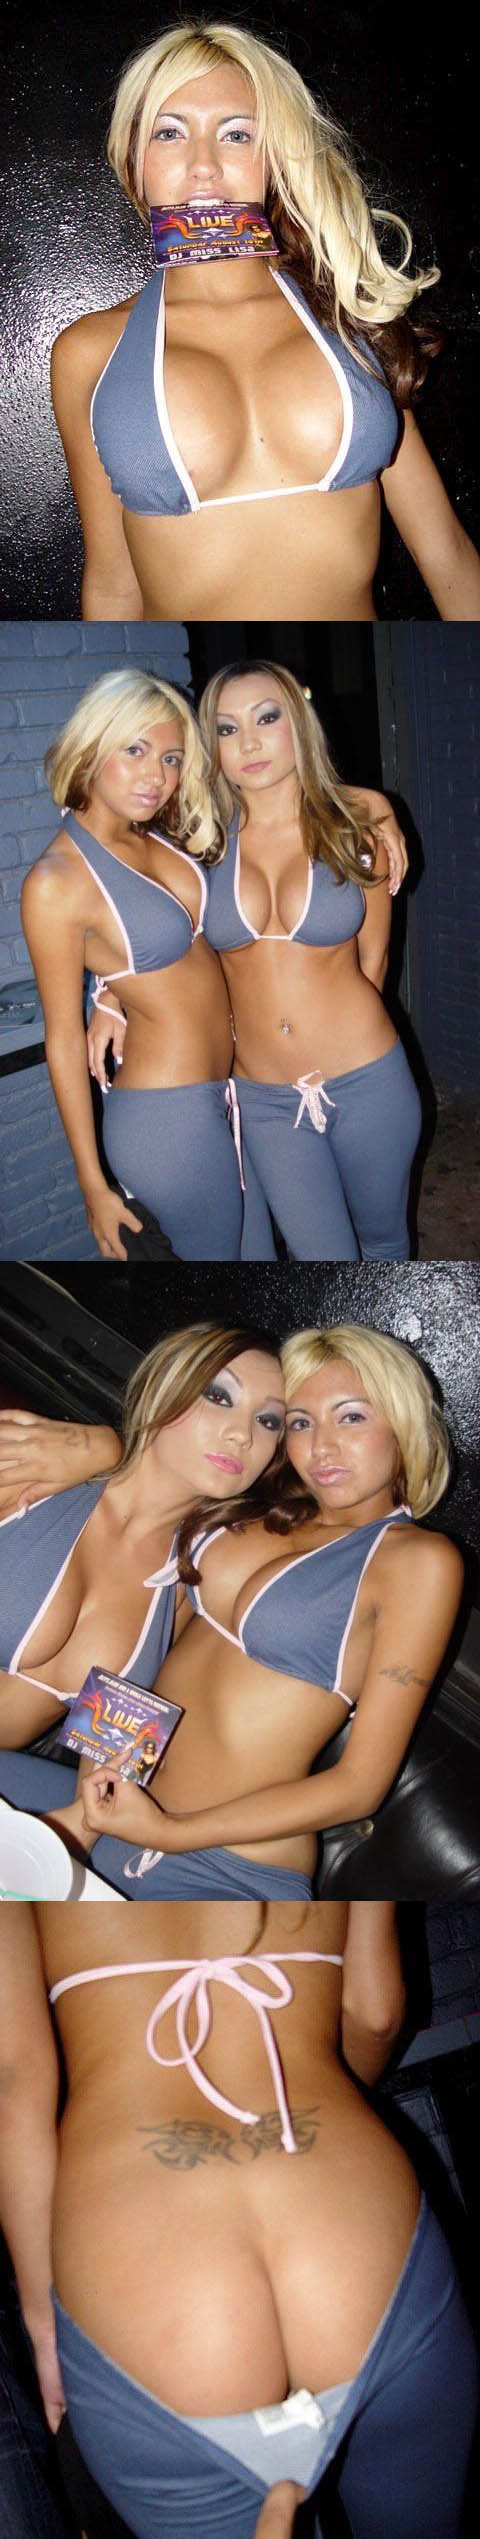 Deux hotesses de soirees sexy dans leurs pantalons gris moulants et leurs hauts de bikini :p